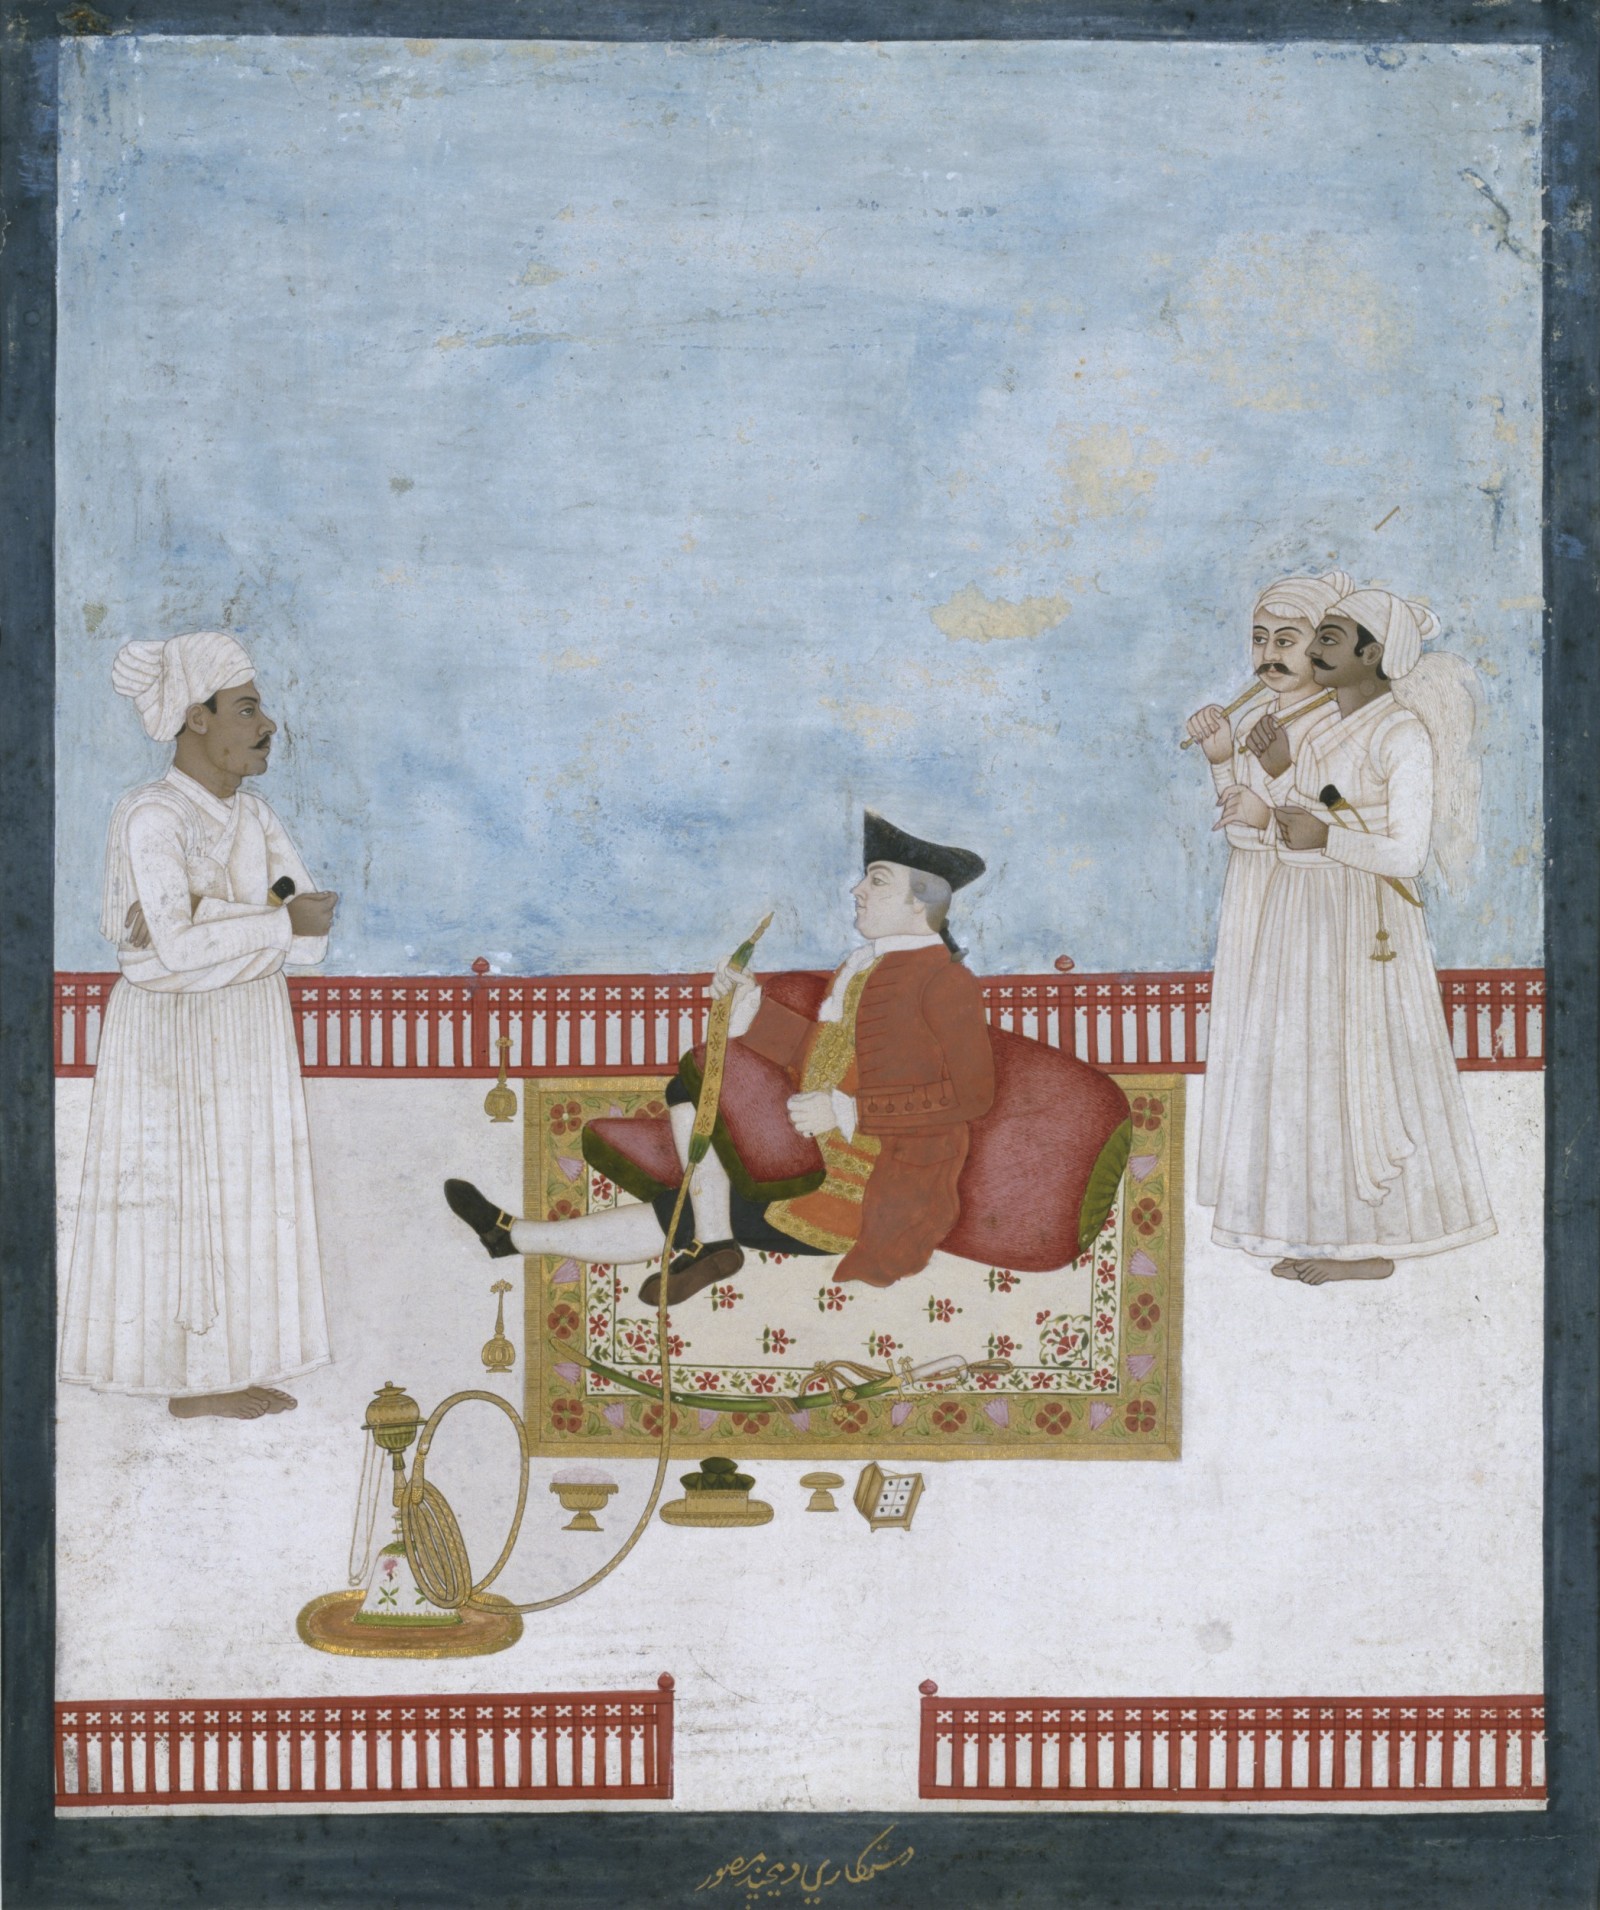 פורטרט של פקיד של חברת הודו המזרחית (האנגלית); אלו תמונות של אמנים הודים והן נקראות ציורי החברה. בתמונה כנראה מופיעה ויליאם פולרטן (Fullerton) מרוזמואנט שאחד הפקידים הבכירים של חברת הודו המזרחית בשנת 1744 ;והוא היה רופא כירורגי בעיר כלכותה בשנת 1751 ולאחר מכן הוא שימש כראש העיר של כלכותה בשנת 1757; בשנת 1763 הוא היה המנתח הראשי סוכנות פאנטה; היחיד ששרד את הטבח של מיר קאסים (Mir Kasim) ממורשידאבאד (Murshidabad). פולרטן, היה גם בלשן מעולה והוא בקשרי ידידות עם הודים רבים והיו לו פילגשים לא מעטות. מקור לתמונה- מוזיאון ויקטוריה ואלברט (Victoria and Albert Museum).